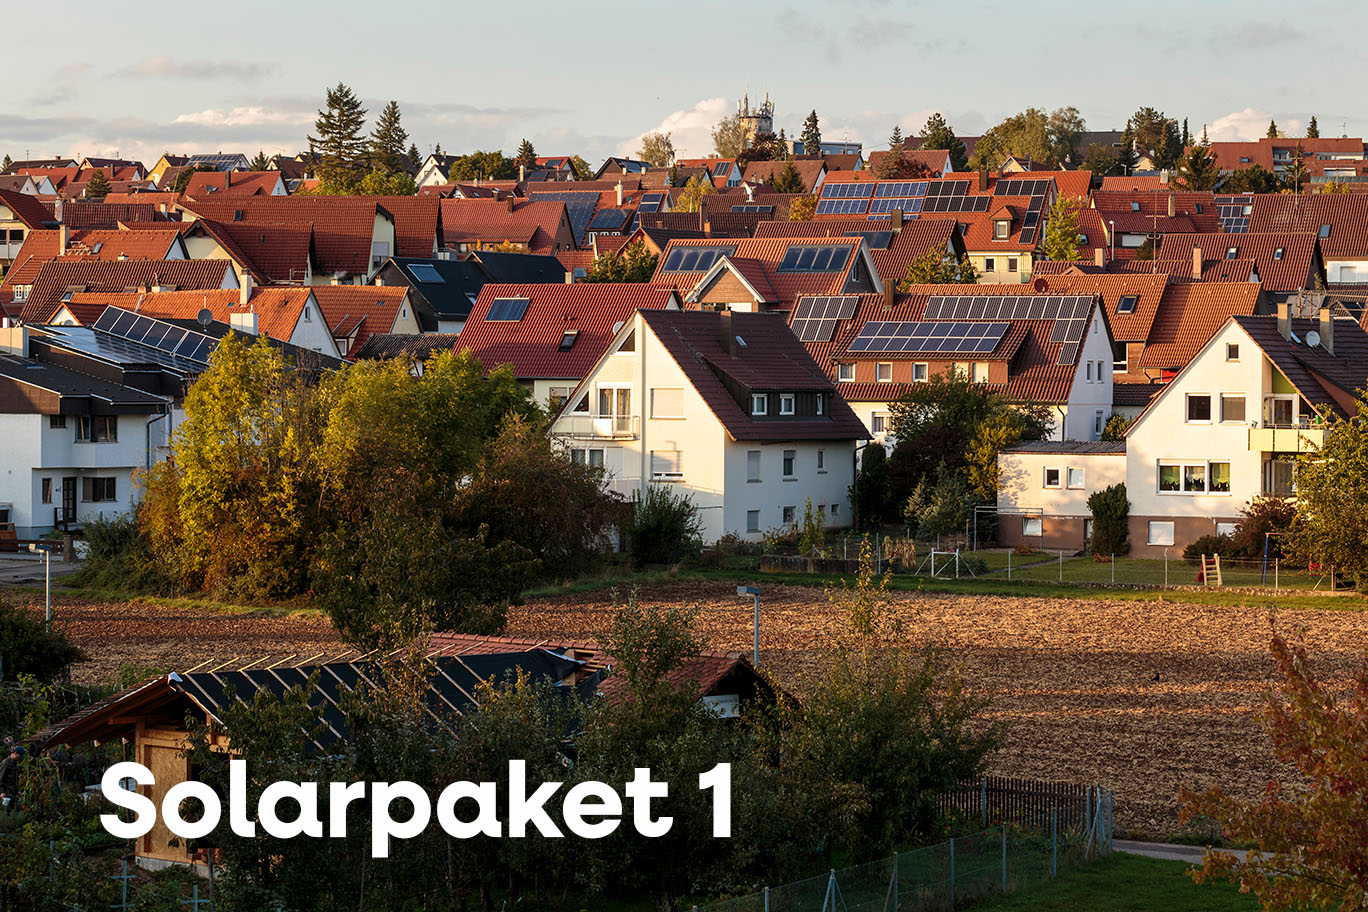 Solarpaket 1 – Beschleunigung und Vereinfachung des Solarausbaus in Deutschland